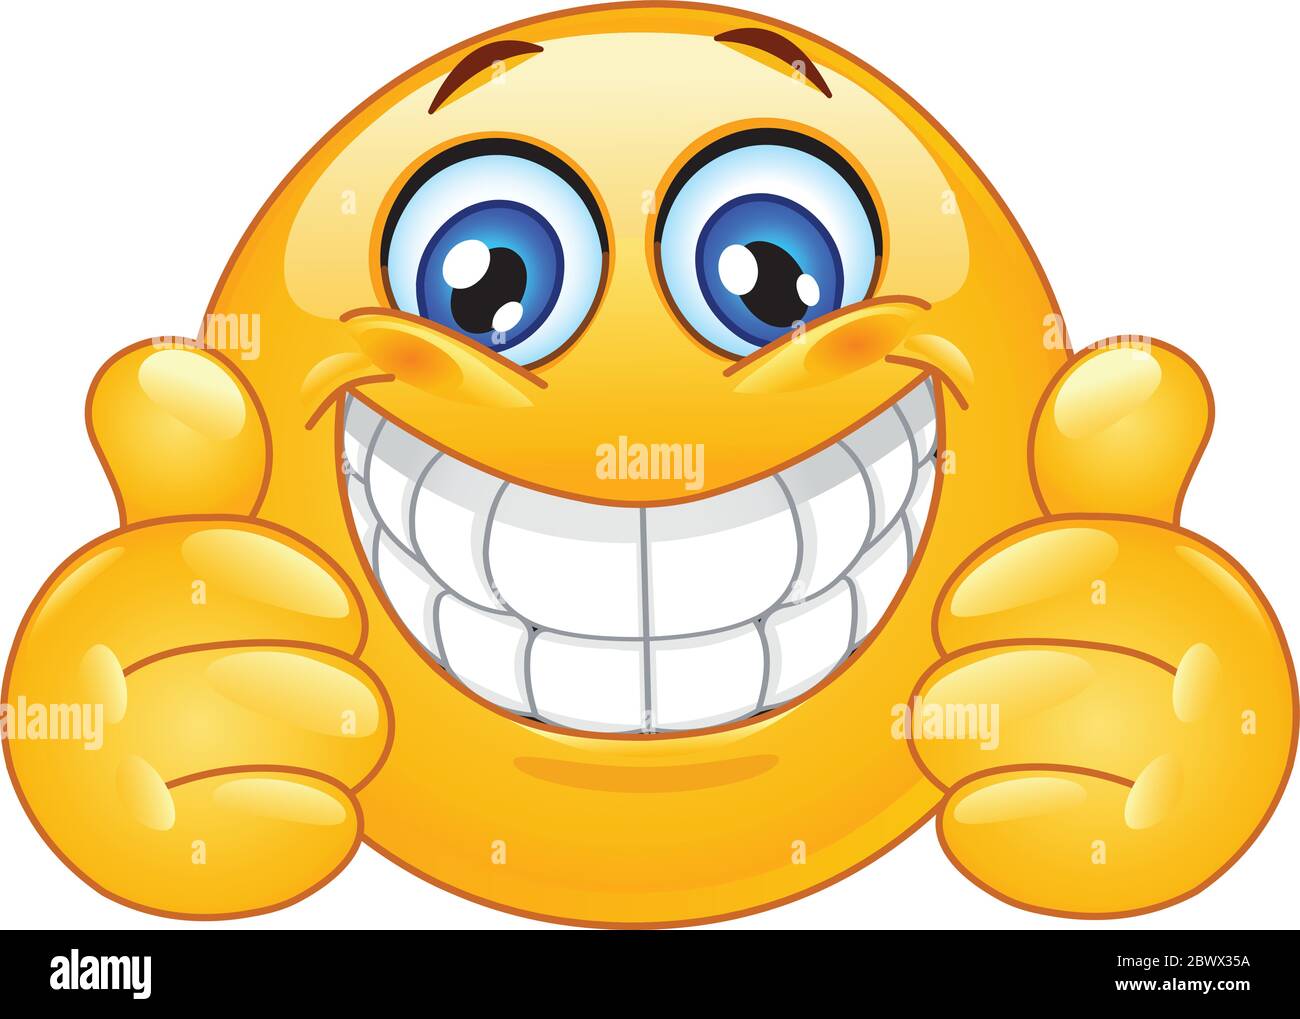 Emoticon mit einem großen, verzackten Lächeln, das die Daumen nach oben zeigt Stock Vektor